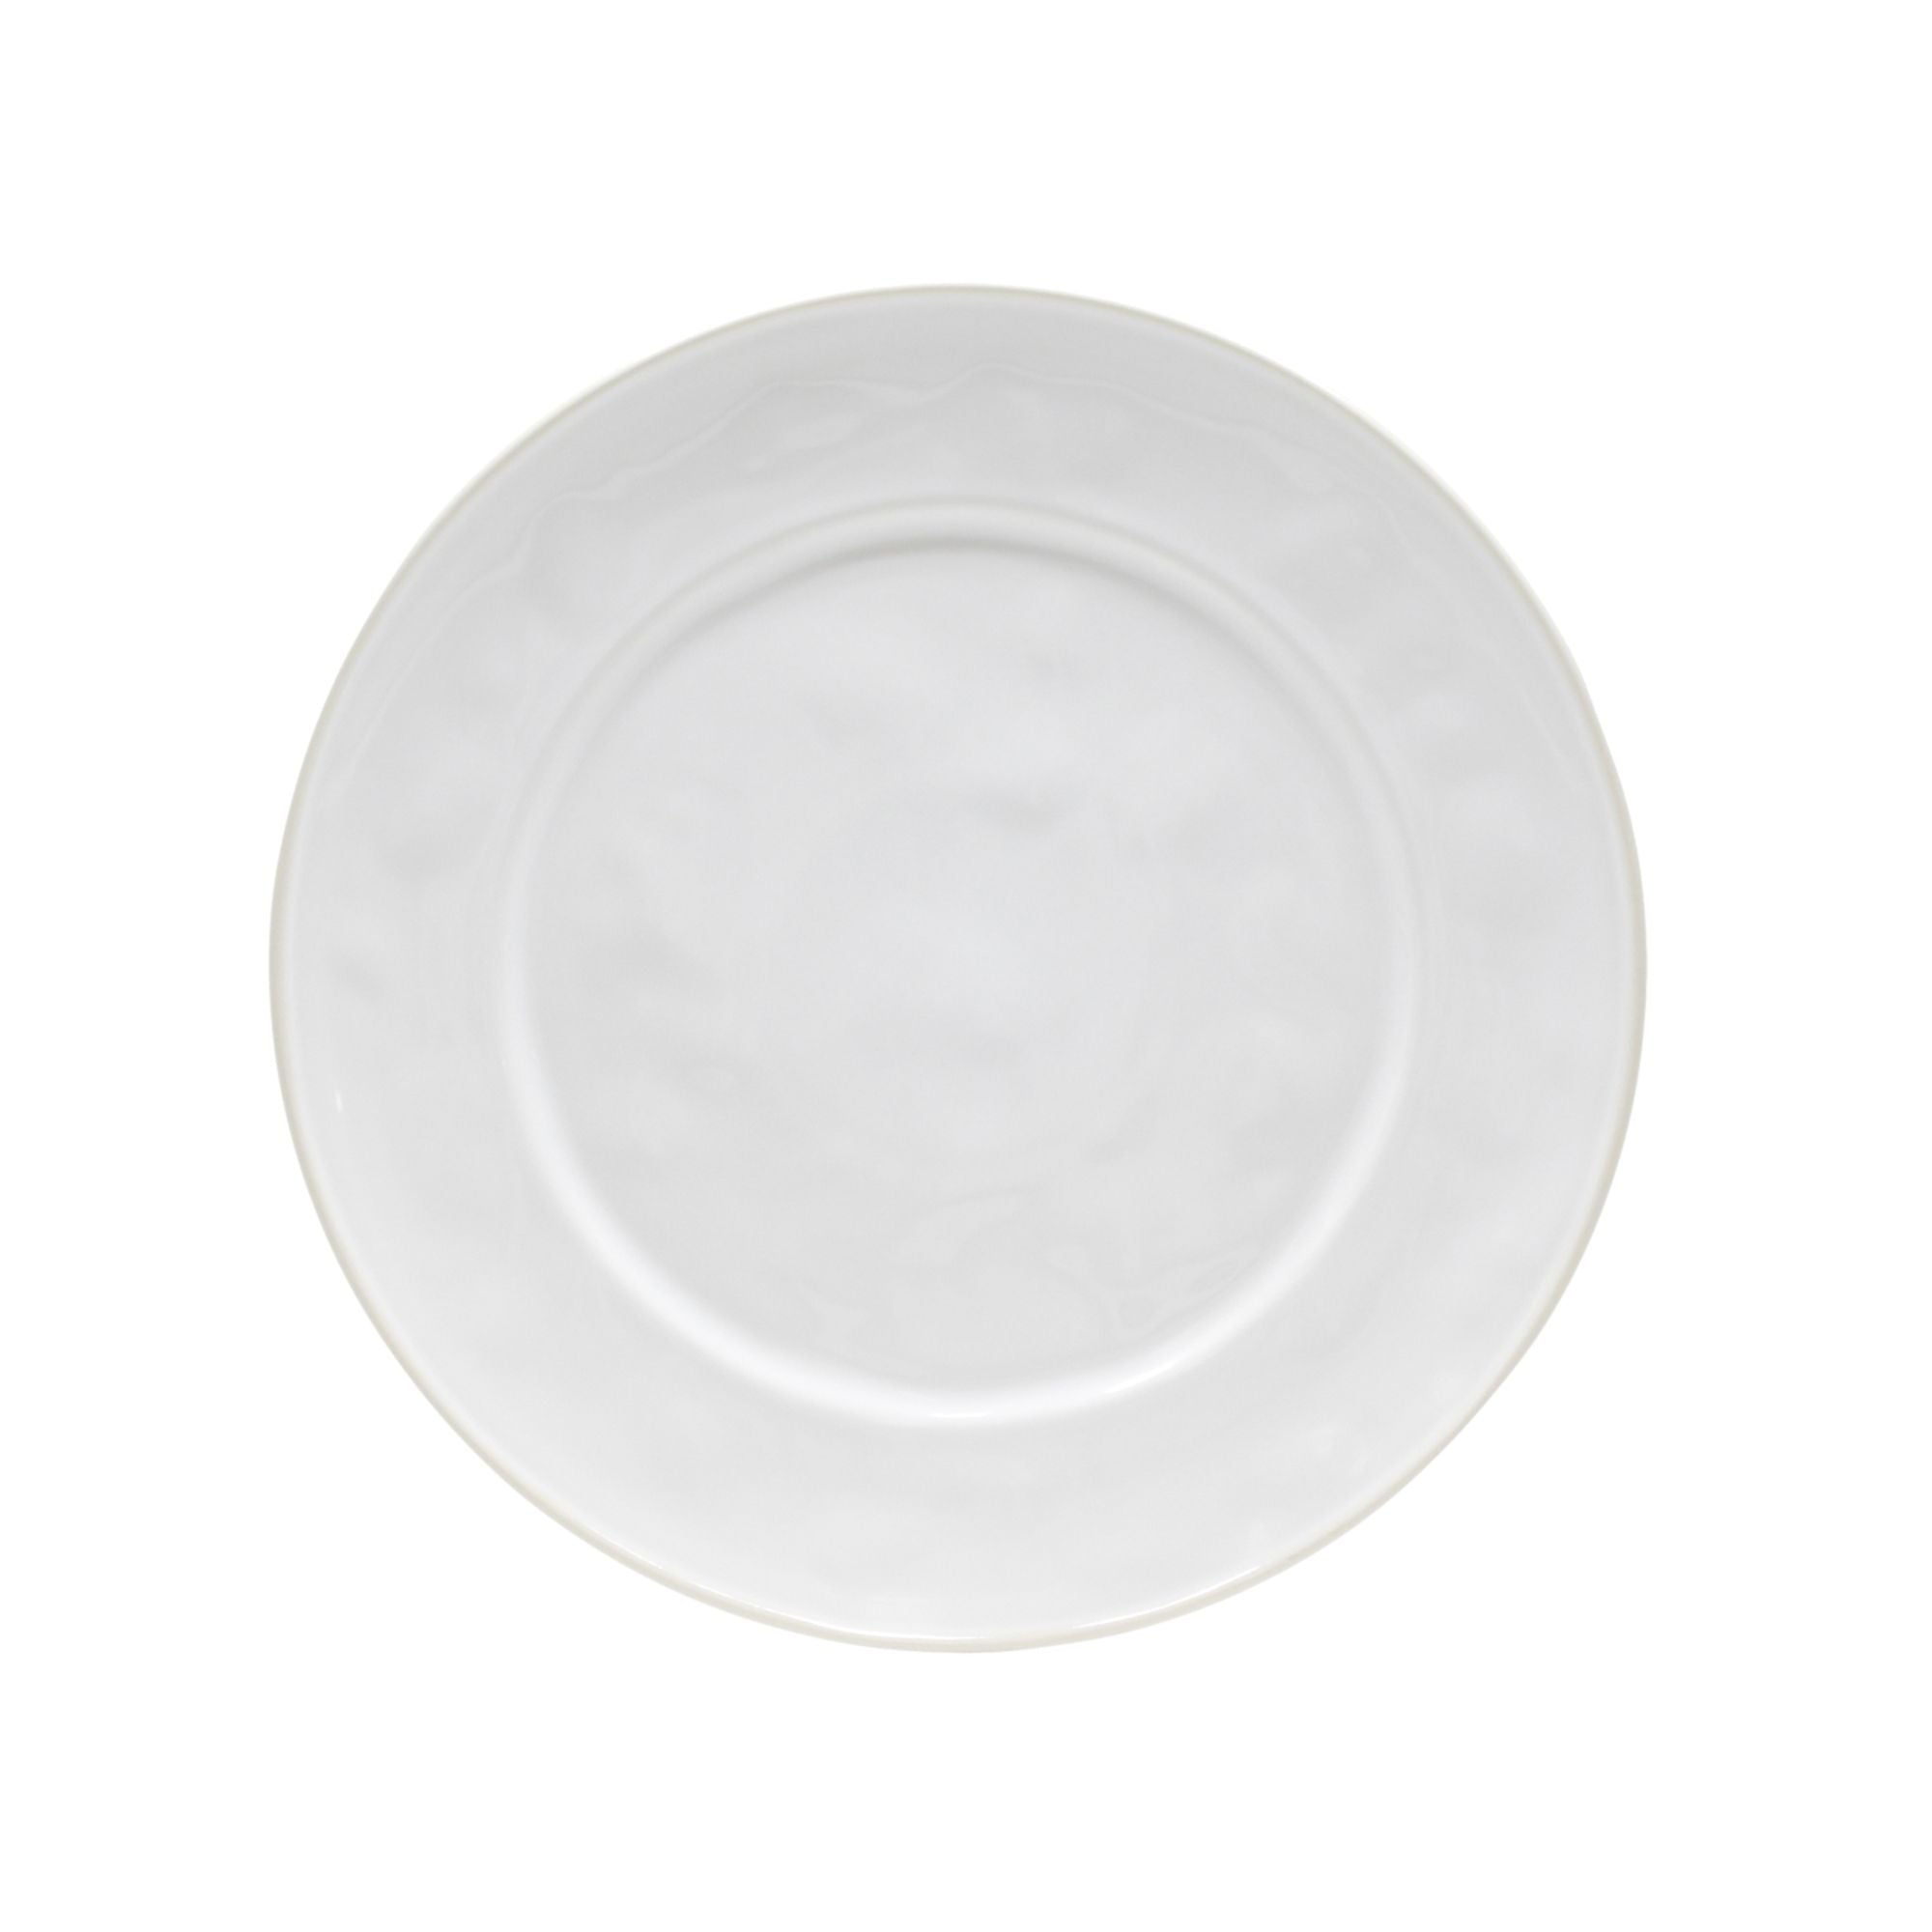 Beja Charger Plate/Platter 13" White-Cream